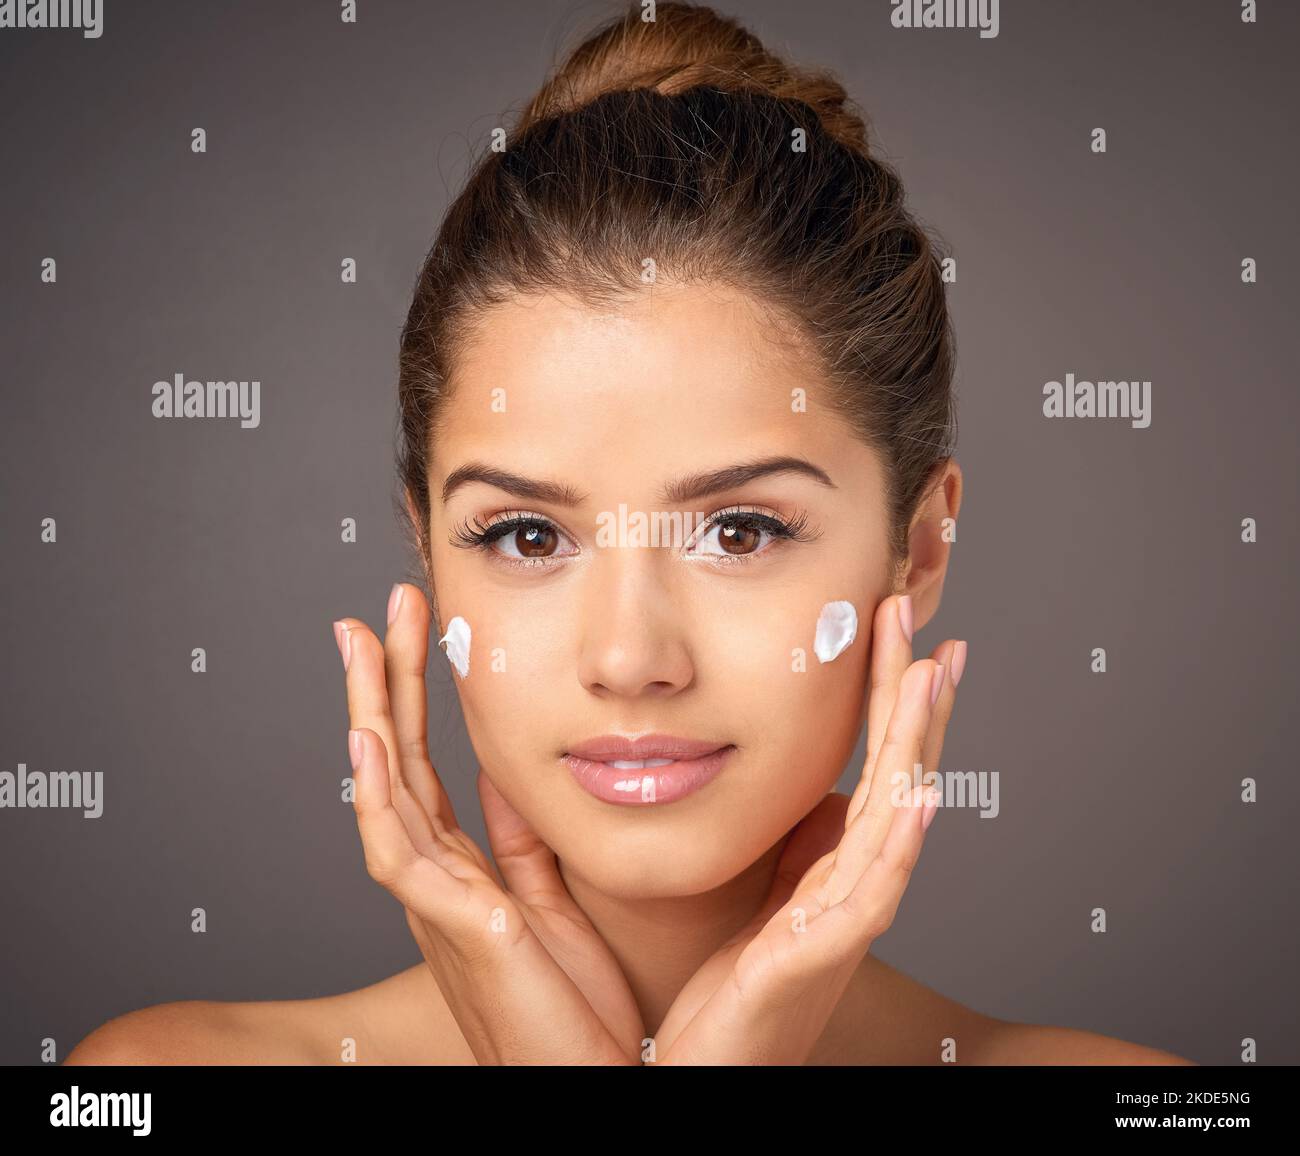 Tun Sie Ihrer Haut einen Gefallen. Porträt eines jungen Models, das im Studio Feuchtigkeitscreme auf ihr Gesicht anwendet. Stockfoto